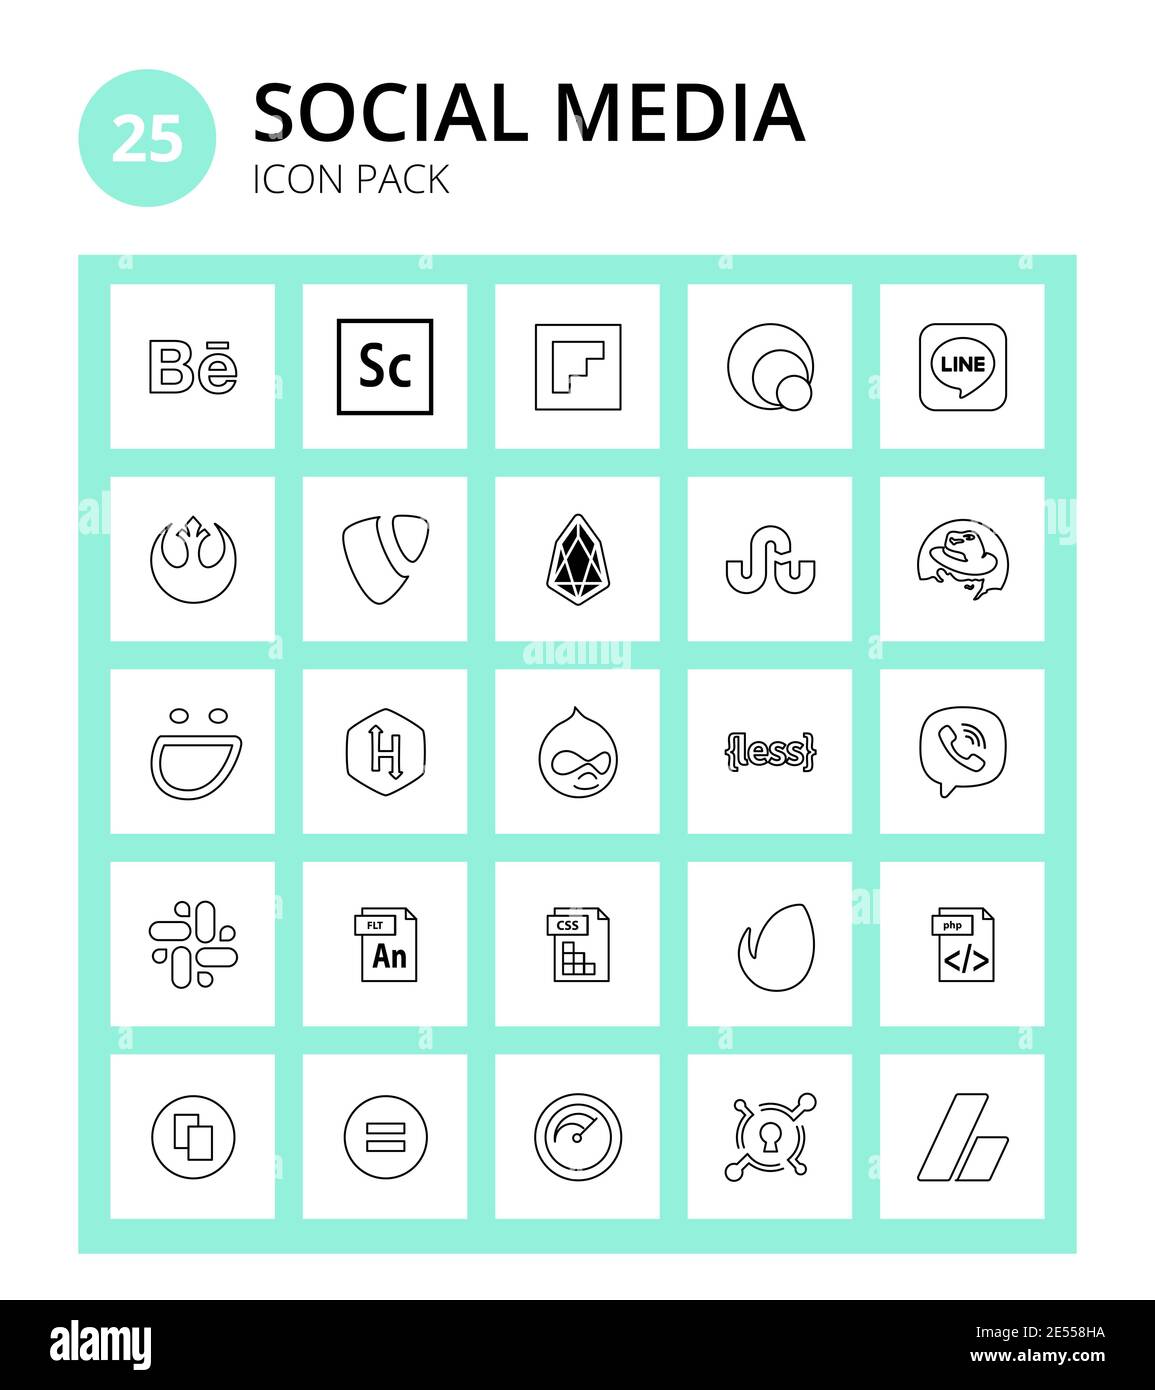 25 Social Signs and Symbols fla, viber, eos, less, hackerrank Editable  Vector Design Elements Stock Vector Image & Art - Alamy